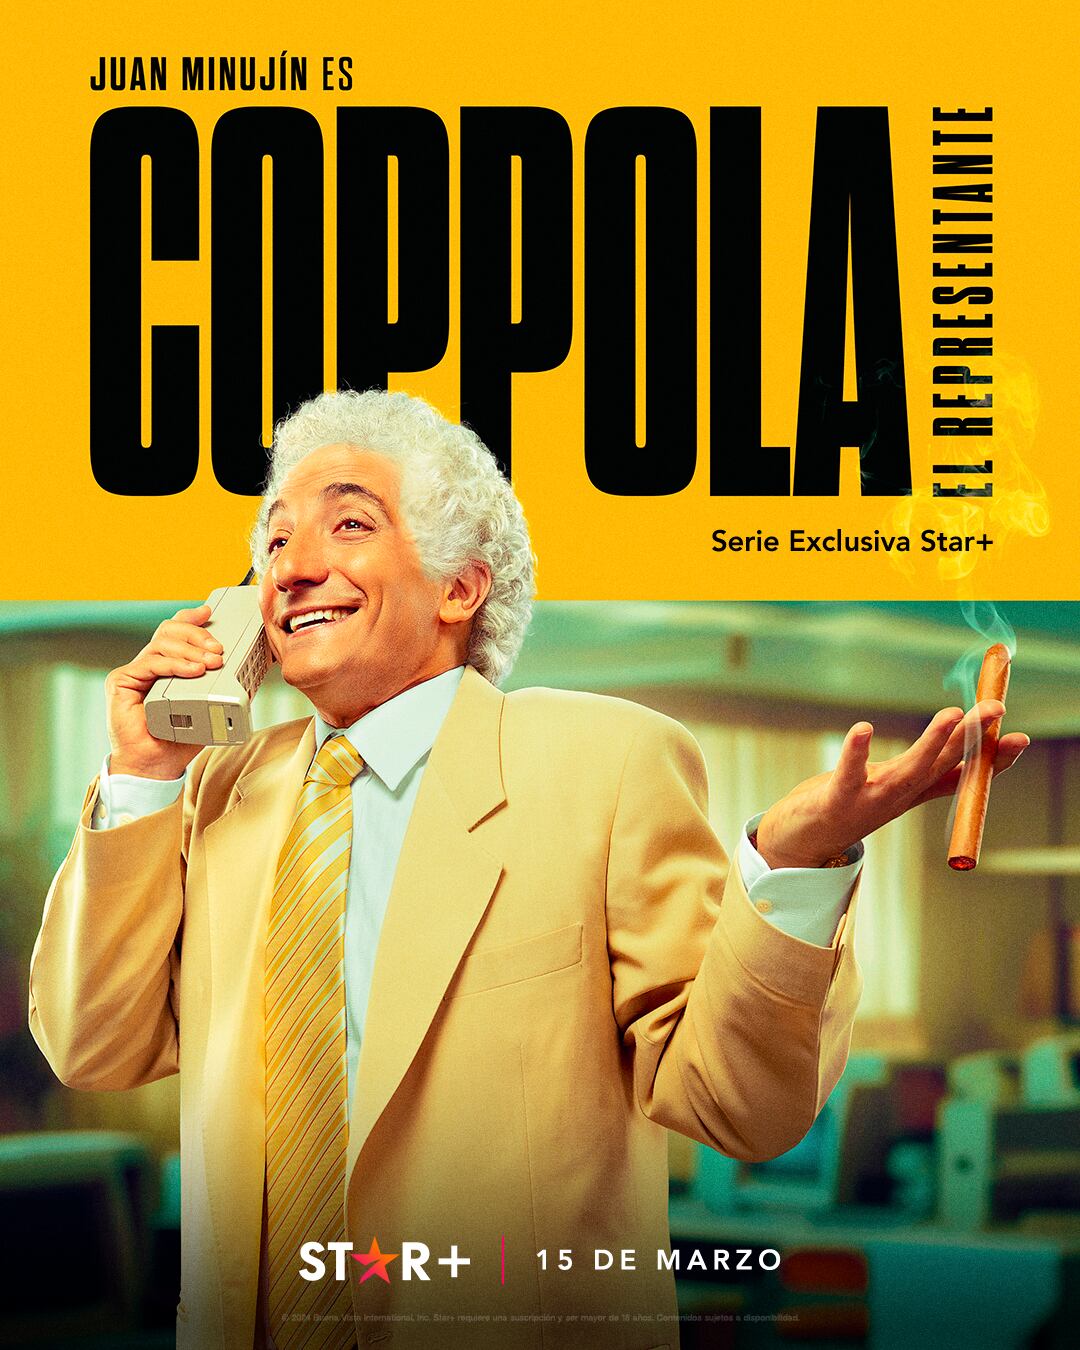 Poster oficial de "Coppola: el representante". (Foto: Prensa Star+)